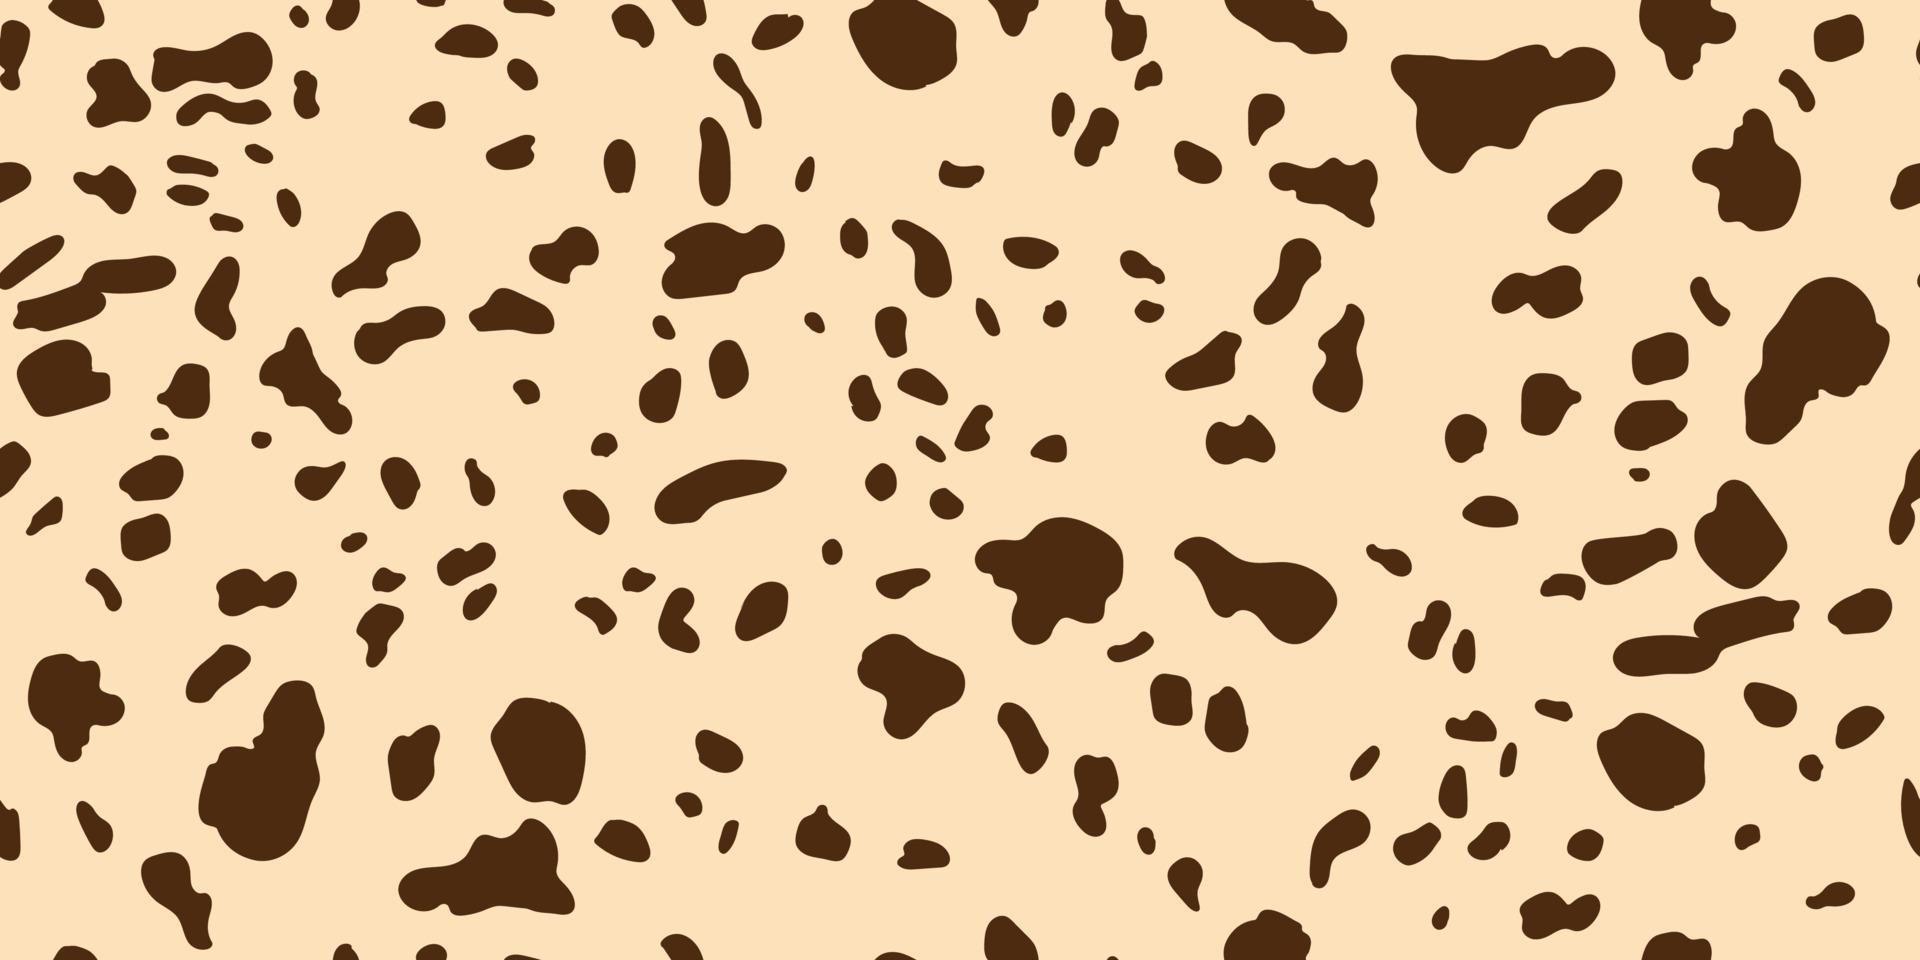 dalmatiska, giraff sömlösa horisontella mönster. prickig djurstruktur av hund, leopard, ko och gepard. afrikansk bakgrund. bruna slumpmässiga fläckar på en beige bakgrund. vektor. vektor